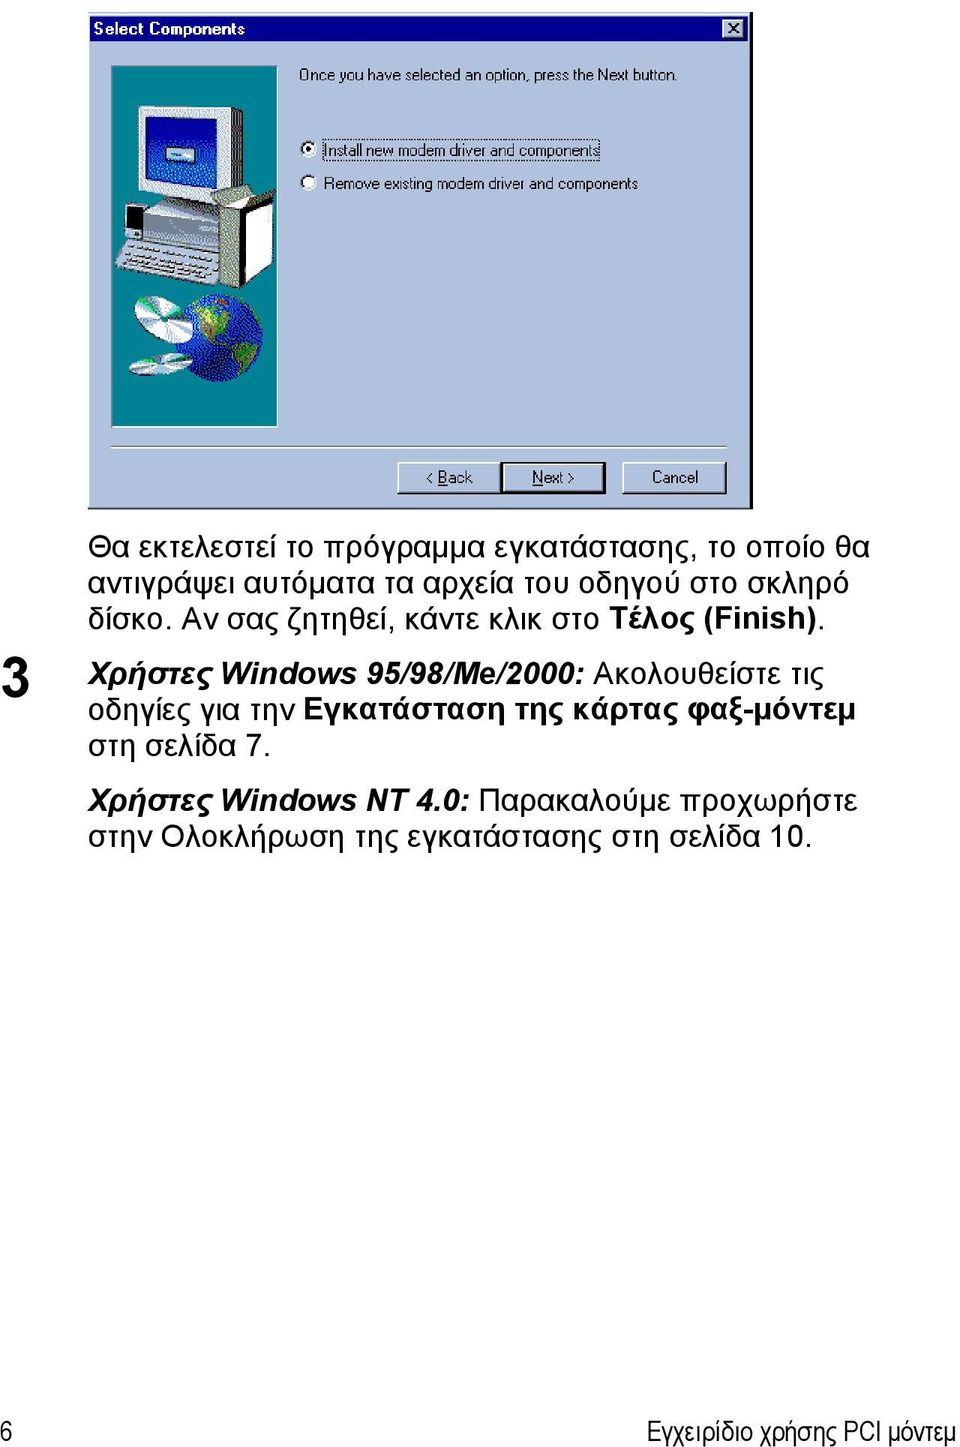 Χρήστες Windows 95/98/Me/2000: Ακολουθείστε τις οδηγίες για την Εγκατάσταση της κάρτας φαξ-μόντεμ